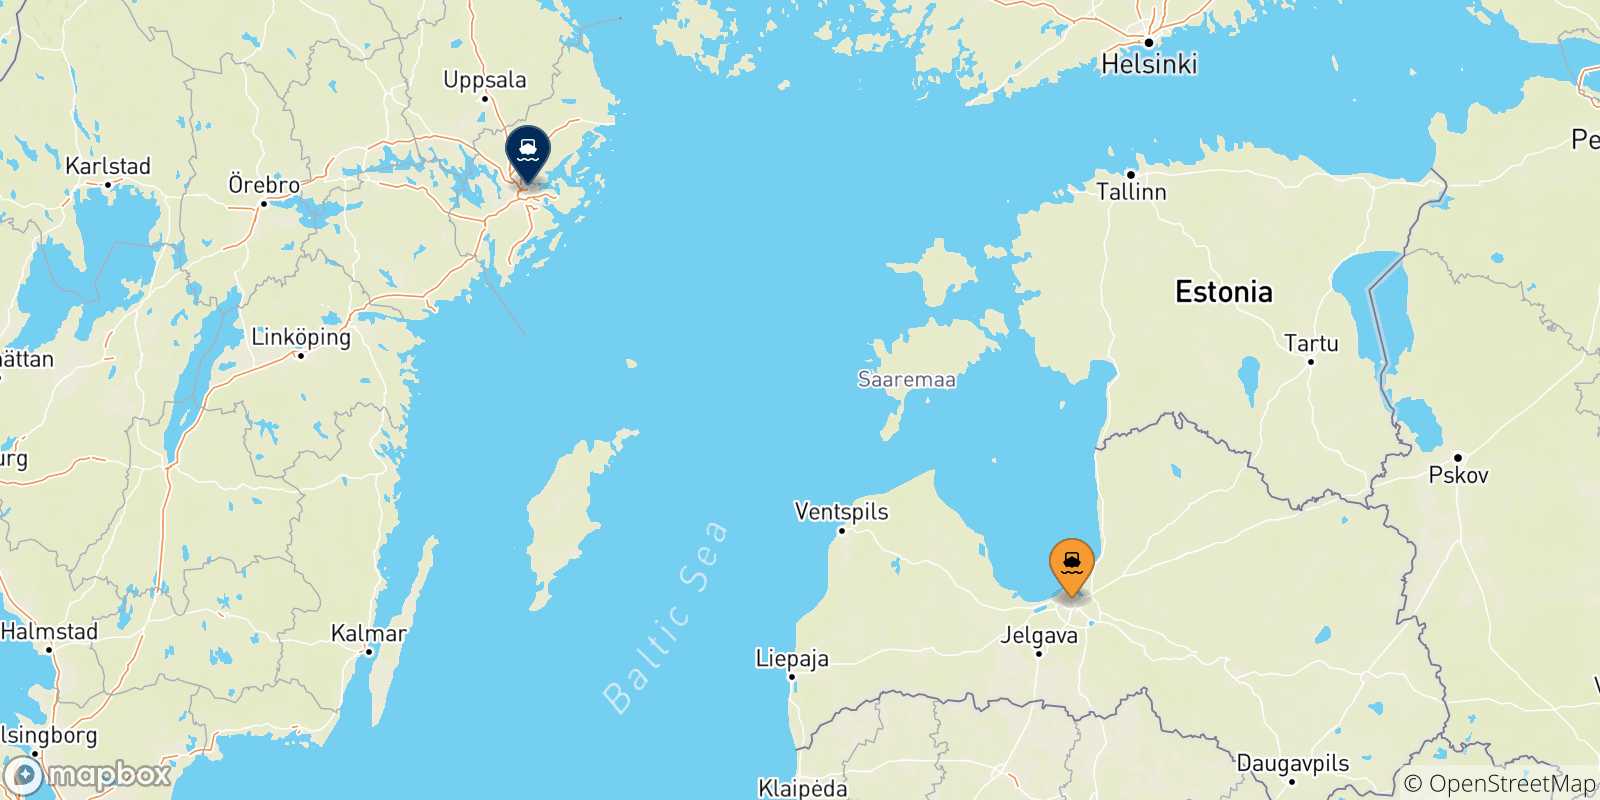 Mappa delle possibili rotte tra la Lettonia e Stoccolma